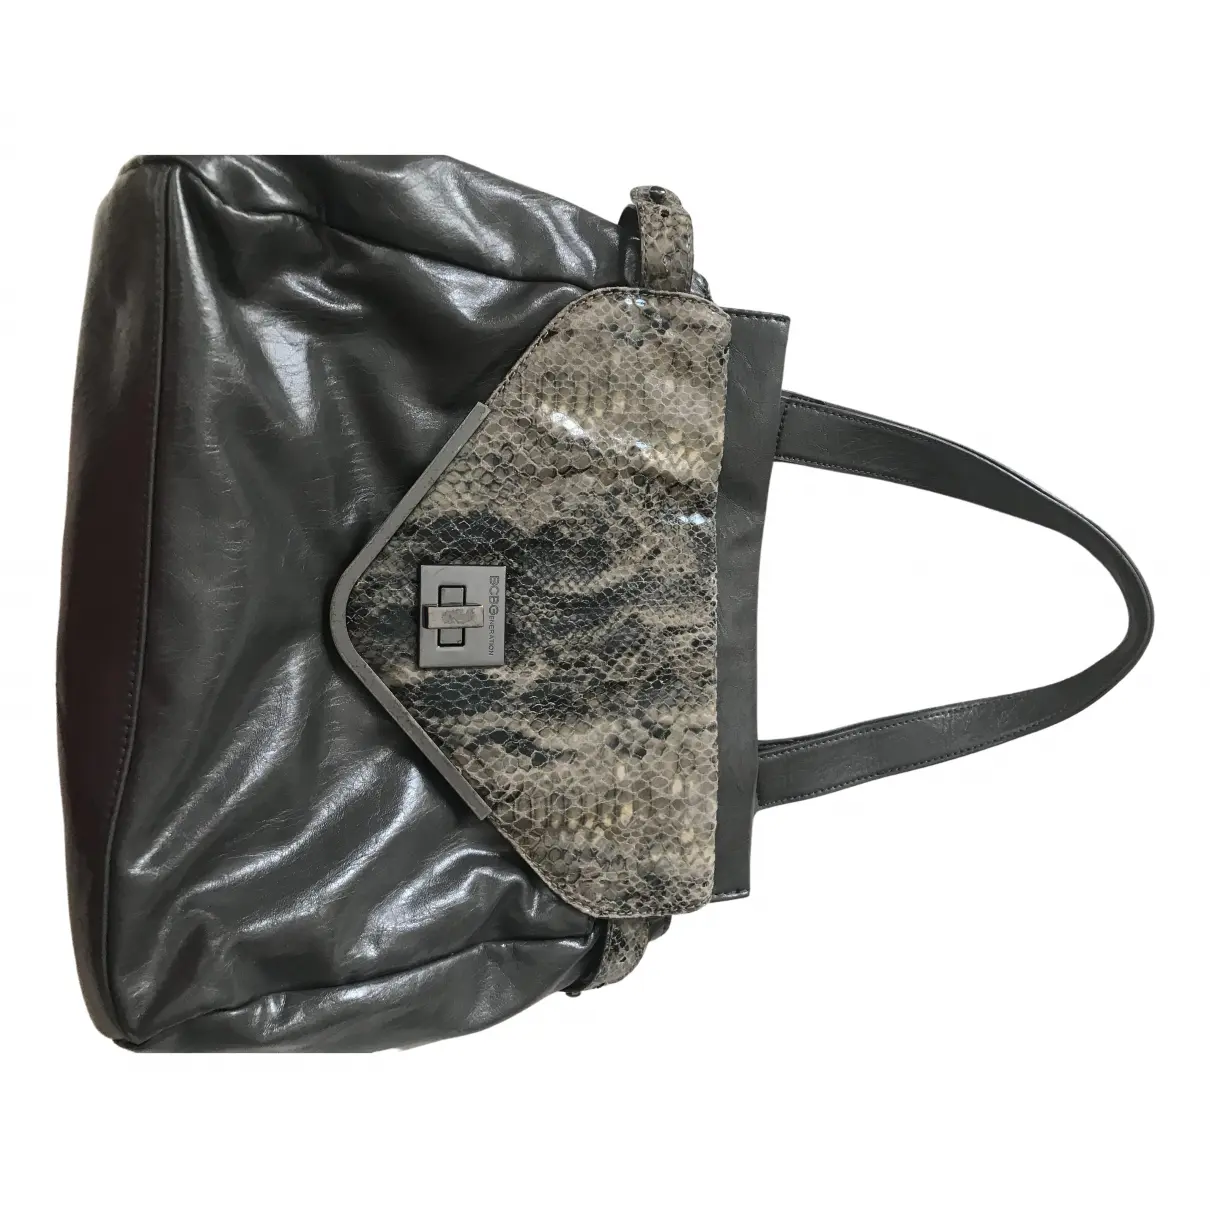 Leather handbag Bcbg Max Azria